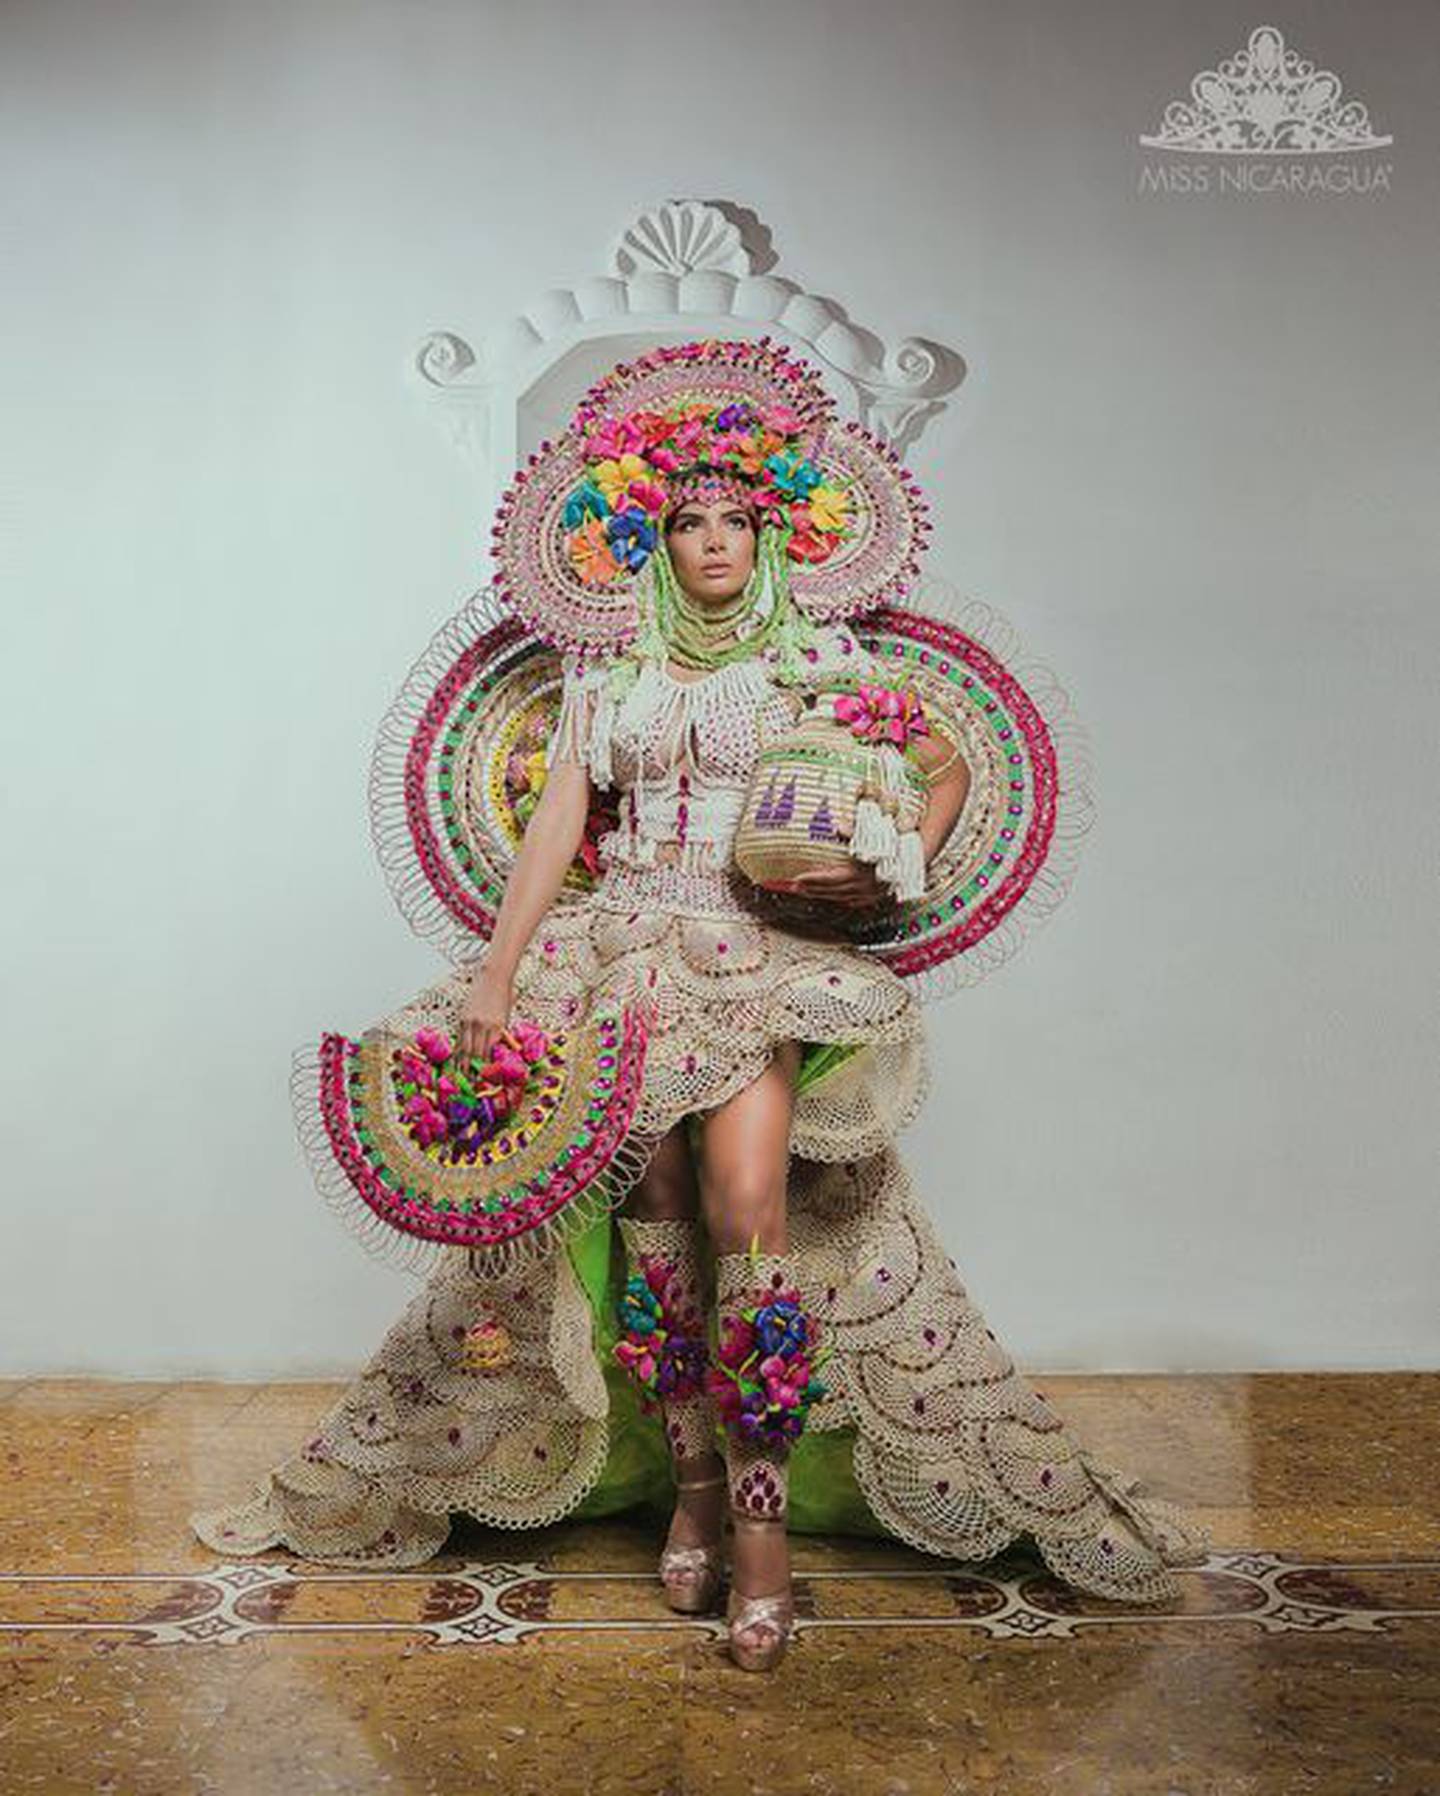 “Mujer virtuosa de arte y manos laboriosas”. Geysell García, de Chontales, lució un diseño de Alfonso Pascua, quien diseñó el traje con materiales nicaragüenses “que le da identidad nacional”.